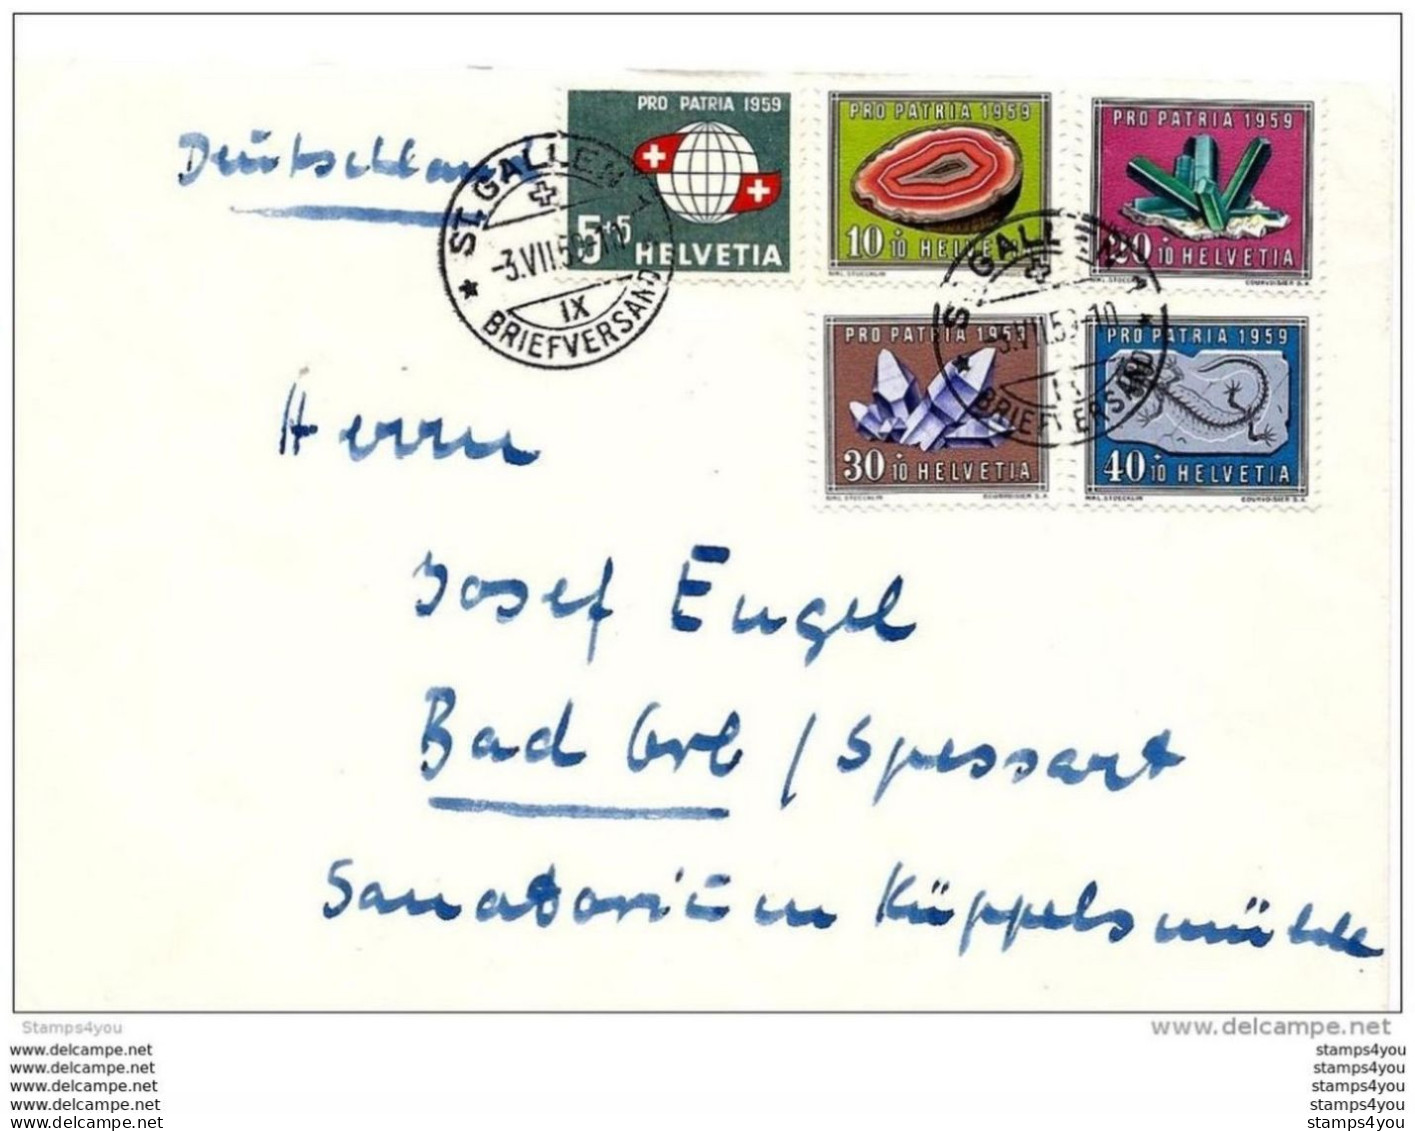 100 - 71 - Enveloppe Envoyée De St Gallern En Allemagne - 1959 Avec Série Pro Patria - Covers & Documents